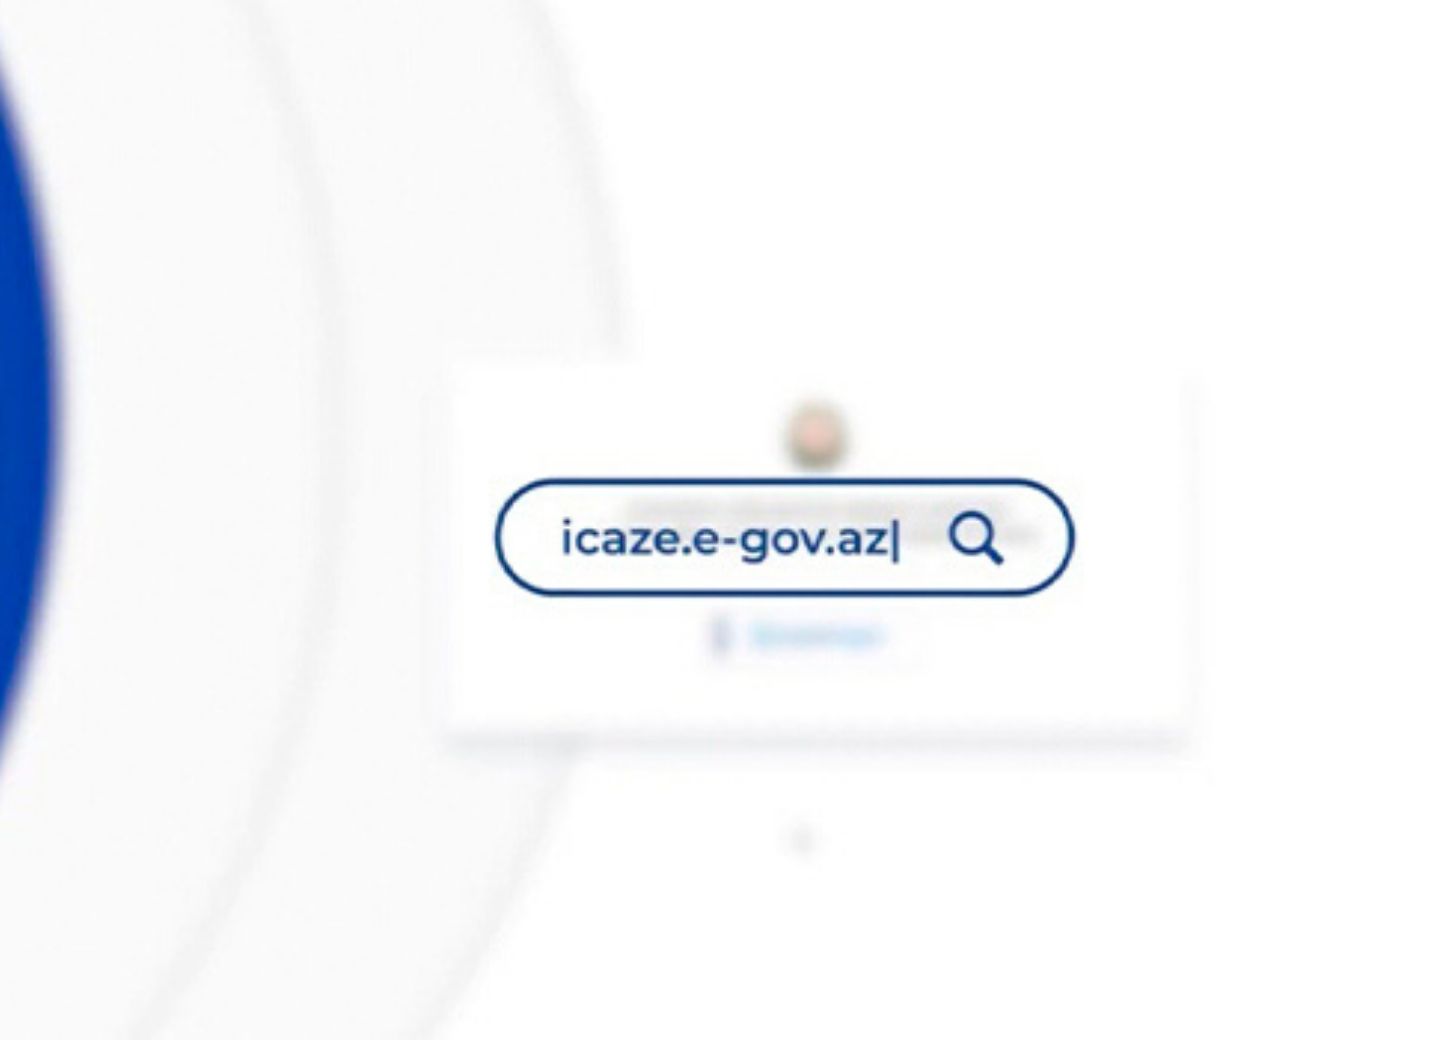 Вновь активизирован портал icaze.e-gov.az 